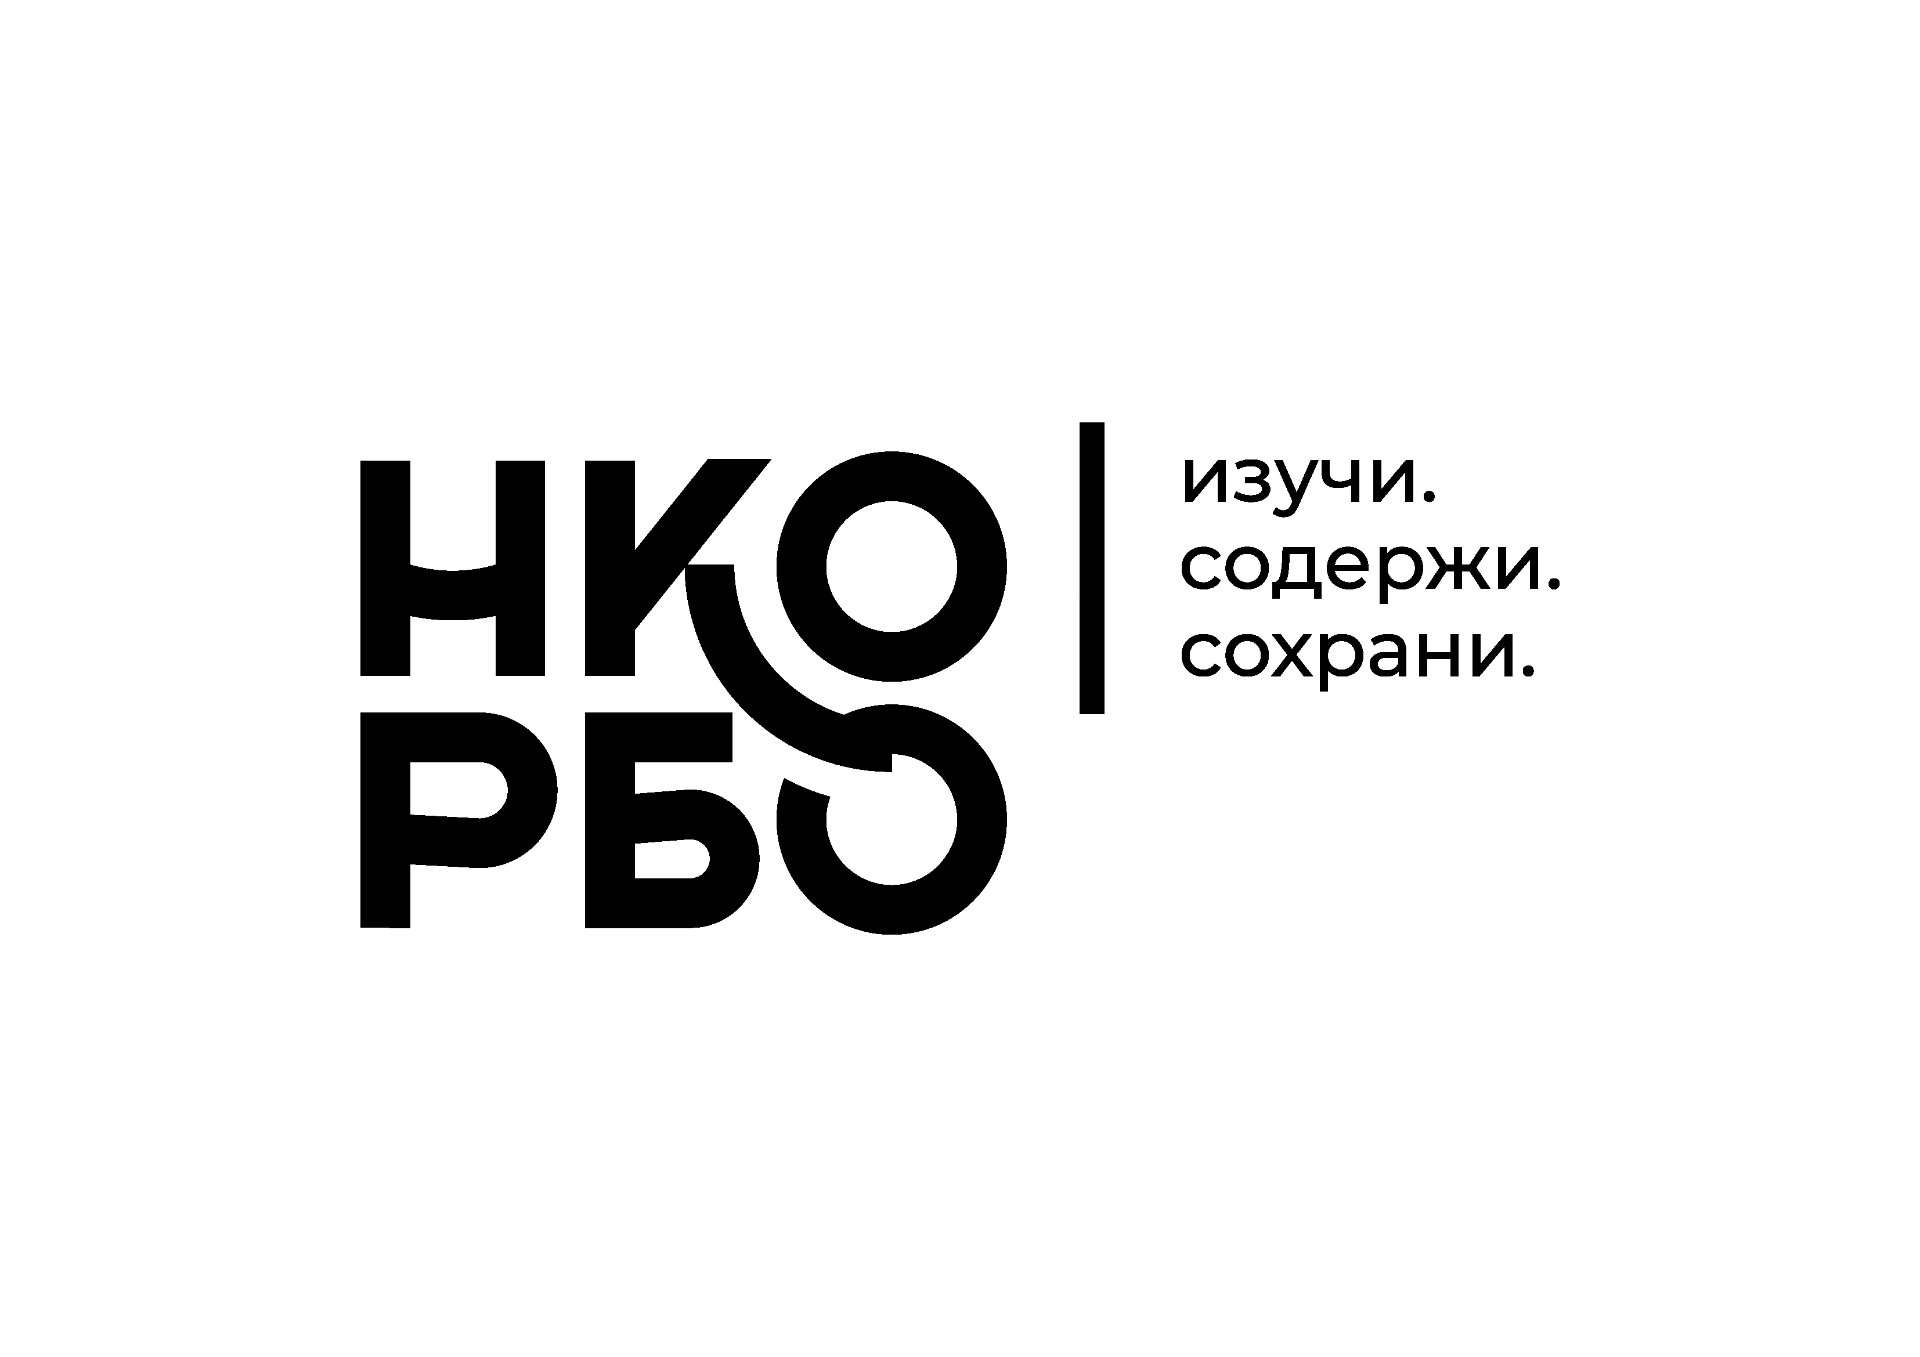 Российское Биологическое Общество